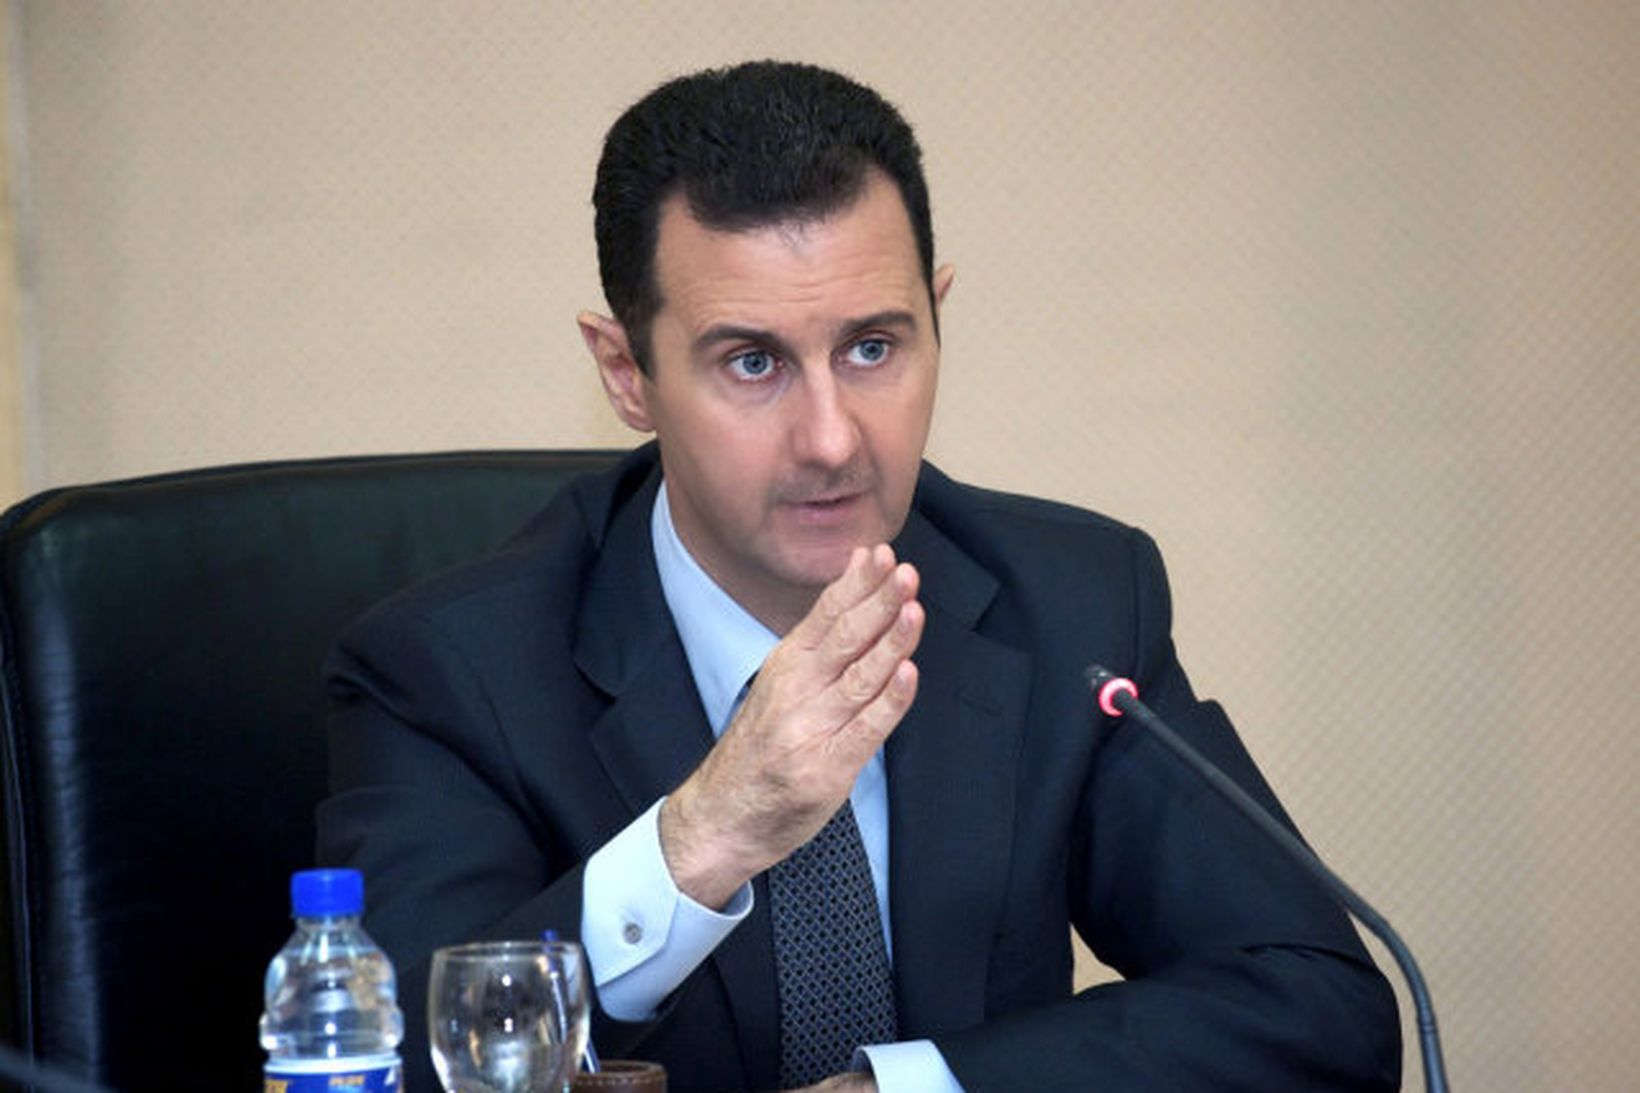 Bashar al-Assad, forseti Sýrlands, segist reiðubúinn til viðræðna við stjórnarandstöðuna …